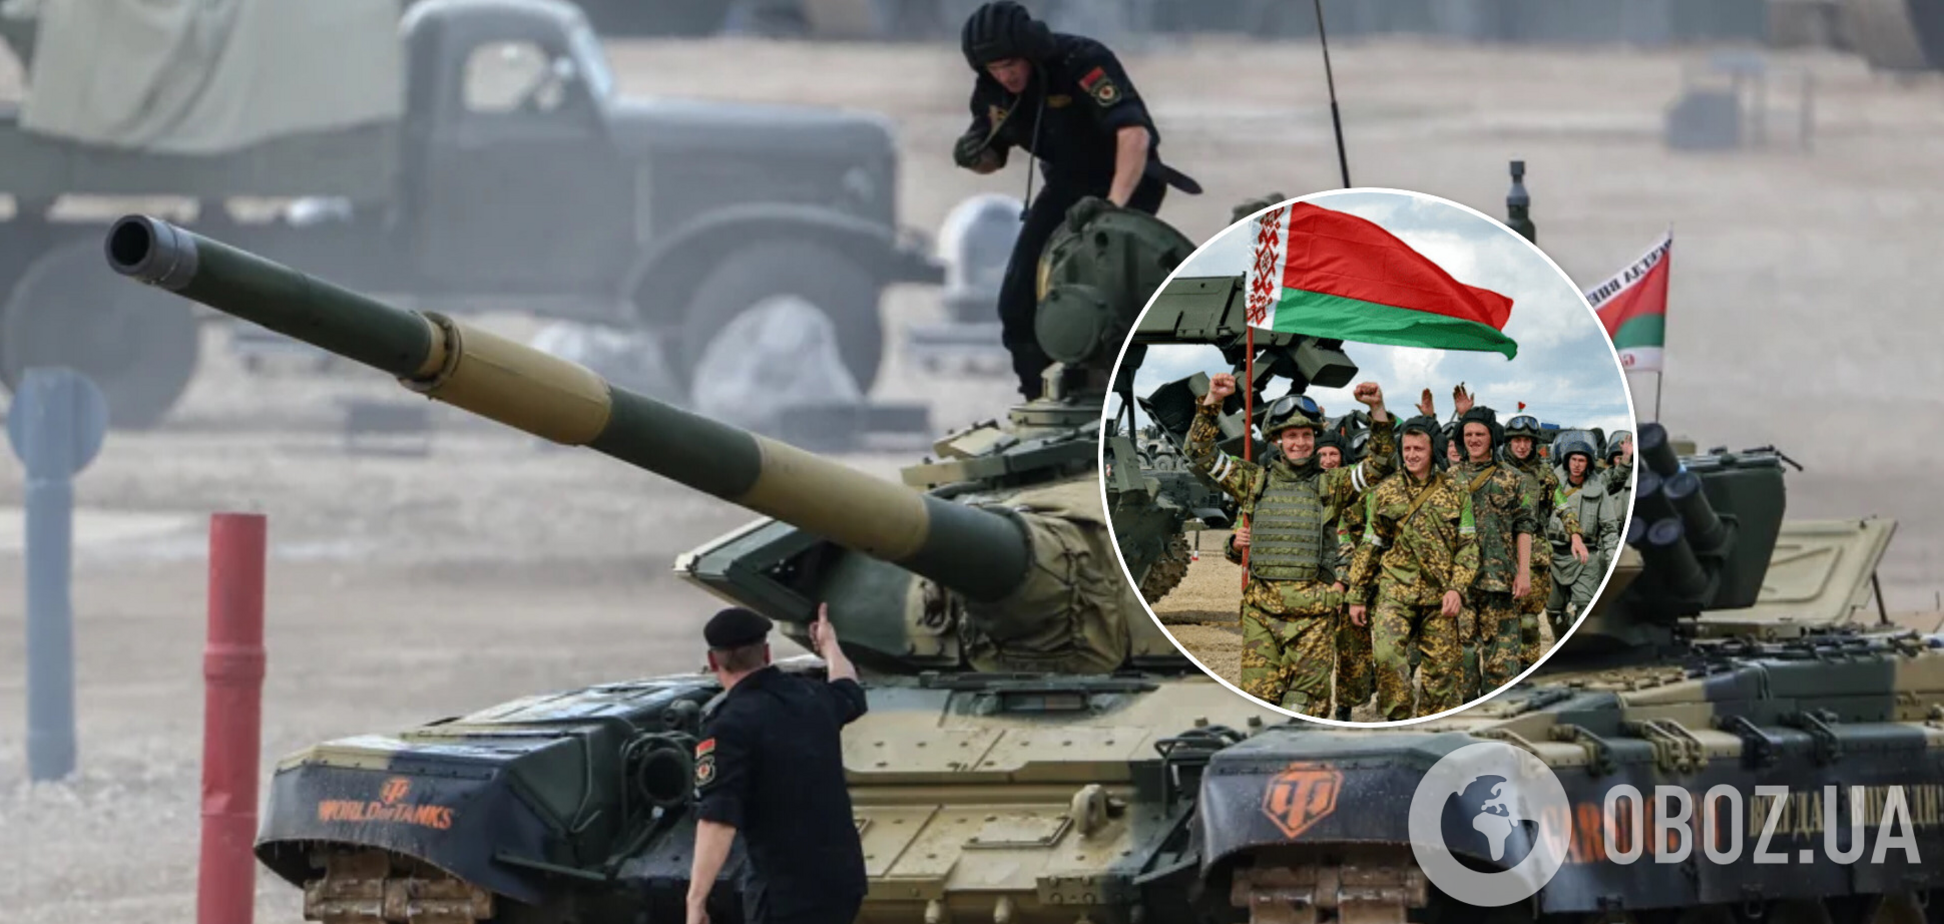 Беларусь разместила на границе с Украиной деревянные танки, демонстрируя присутствие – Минобороны